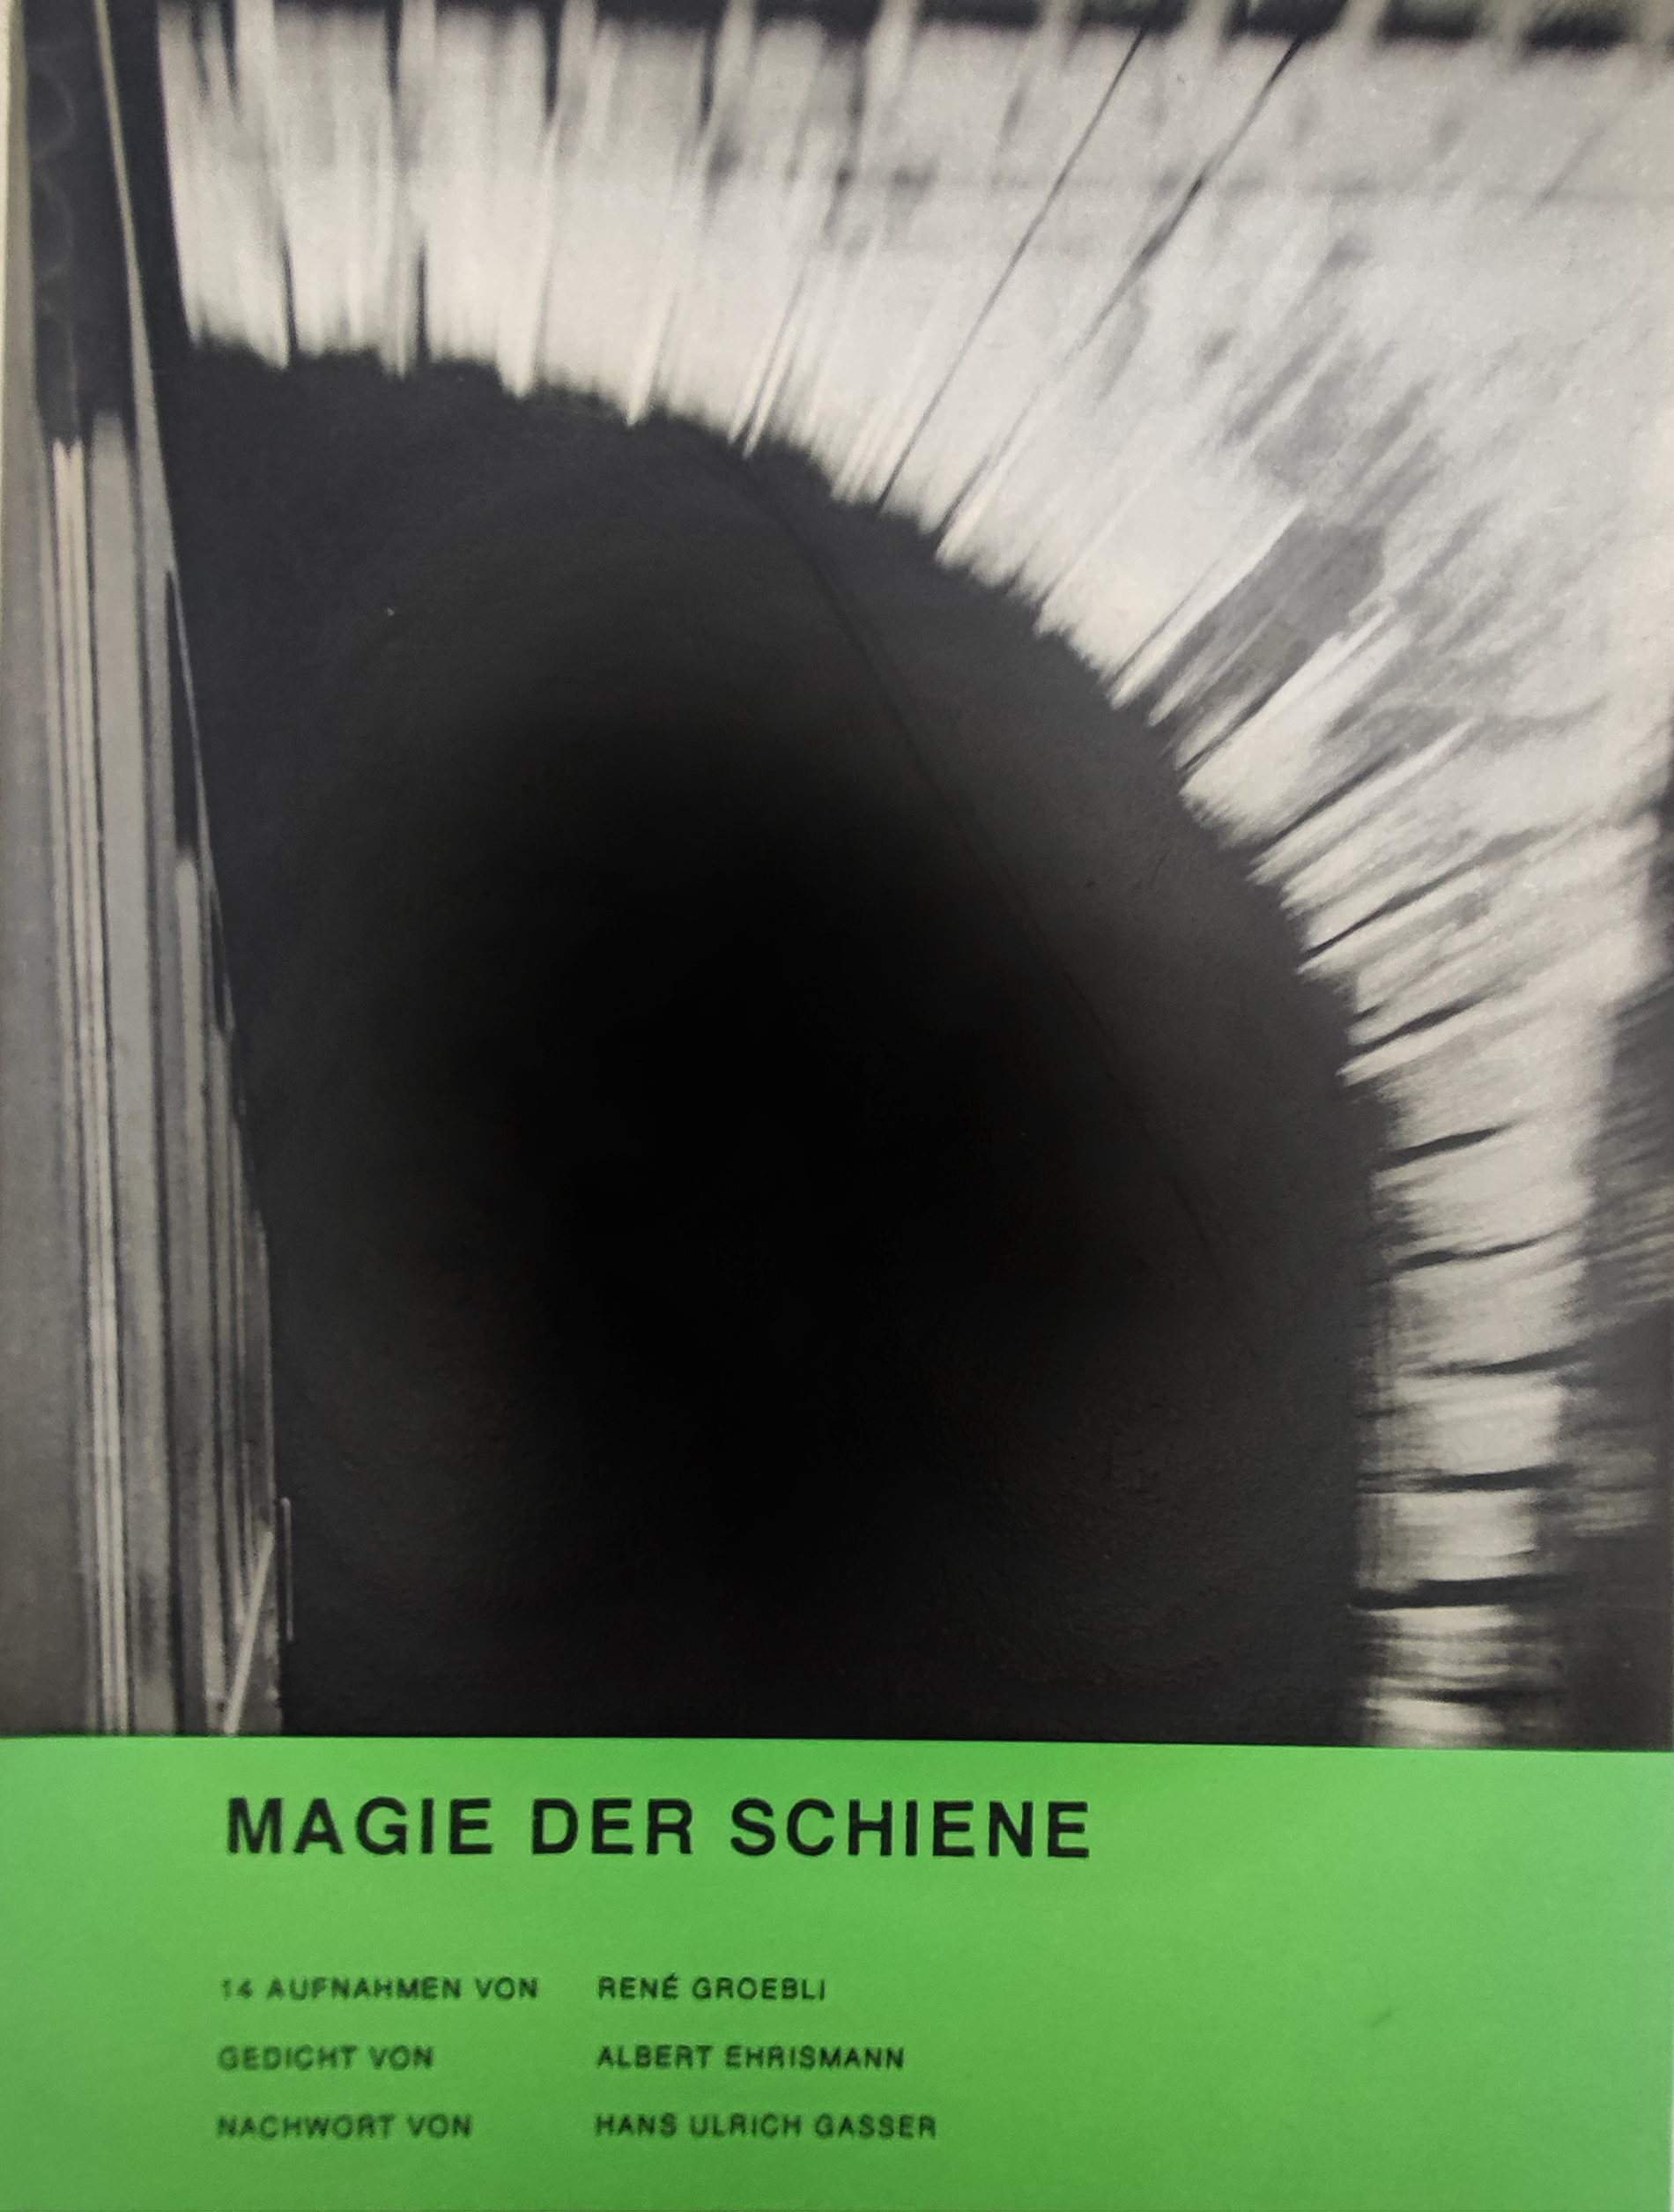 Magie der Schiene. Zürich, Kubus Verlag, 1949.